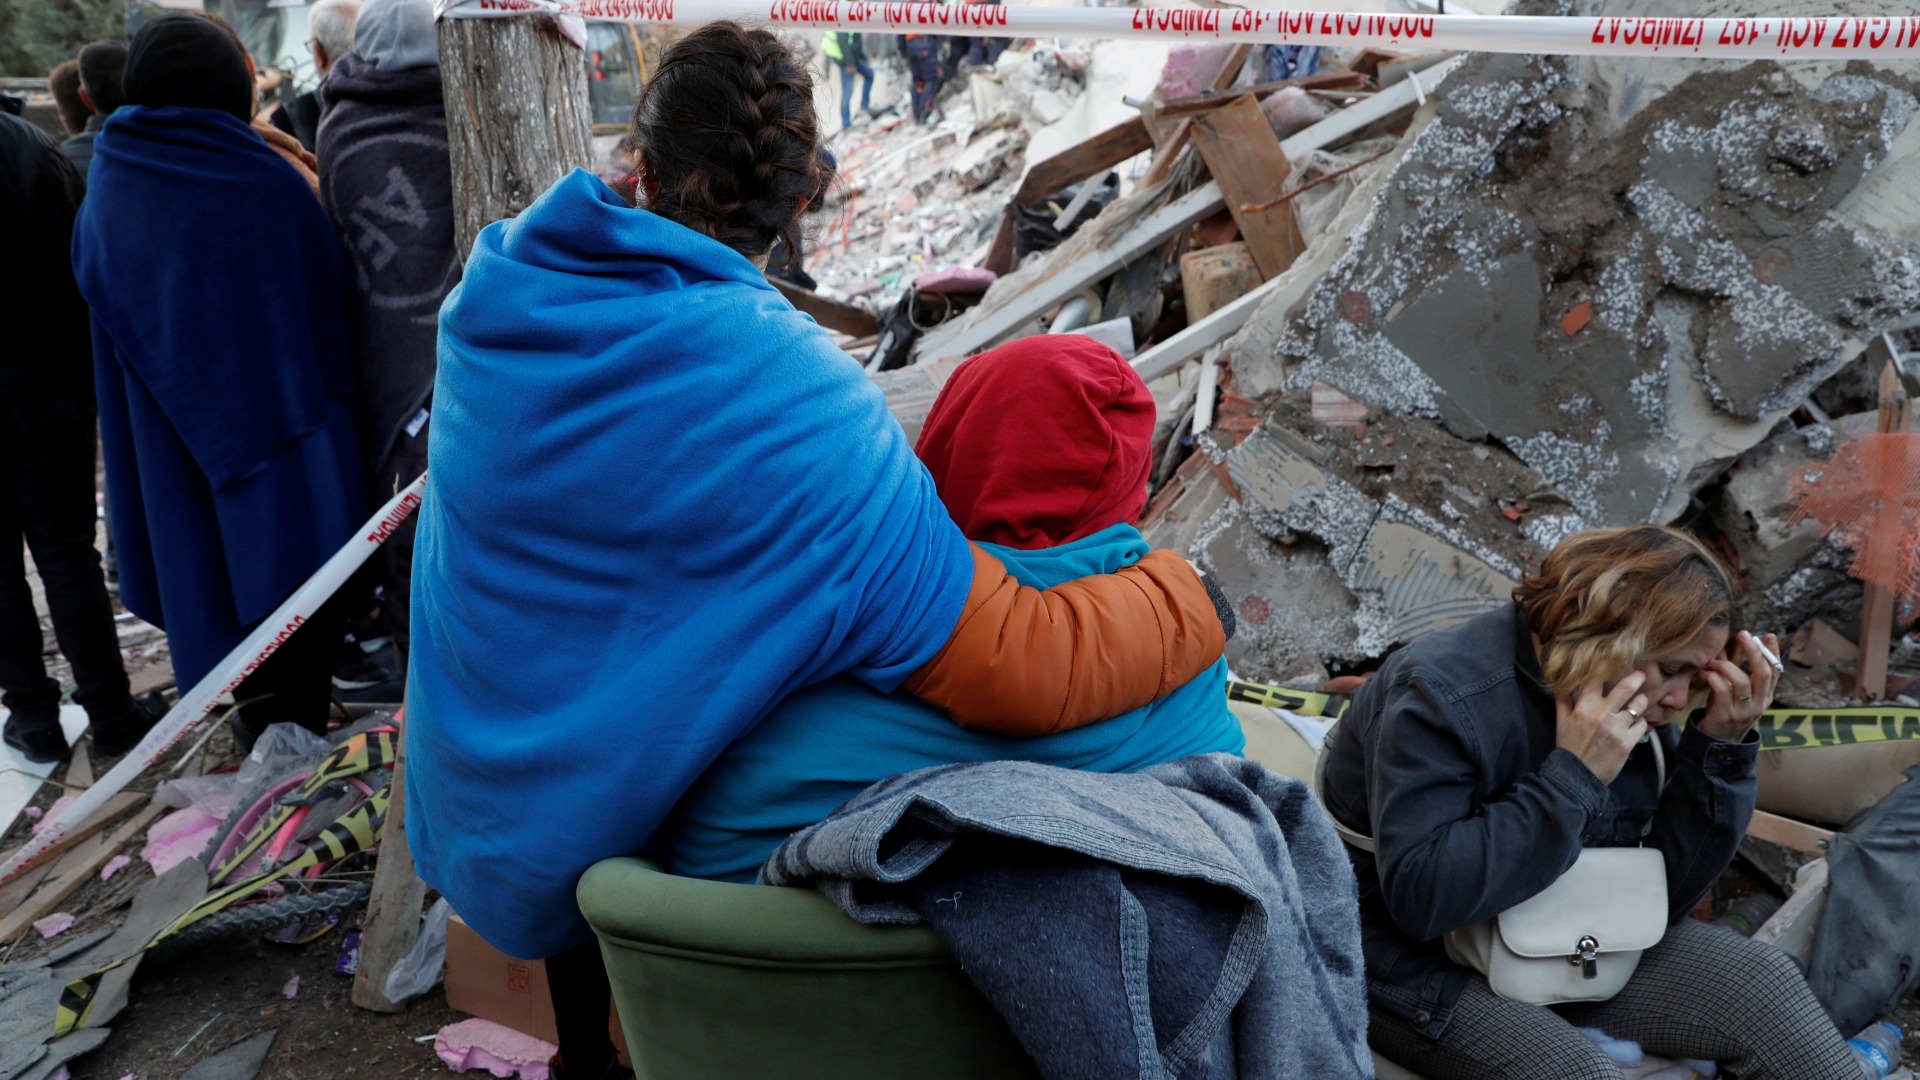 Thảm họa động đất ở Thổ Nhĩ Kỳ: Tiếng la hét run rẩy giữa đống đổ nát hoang tàn, cảm giác thế nào khi động đất ập đến? - Ảnh 6.